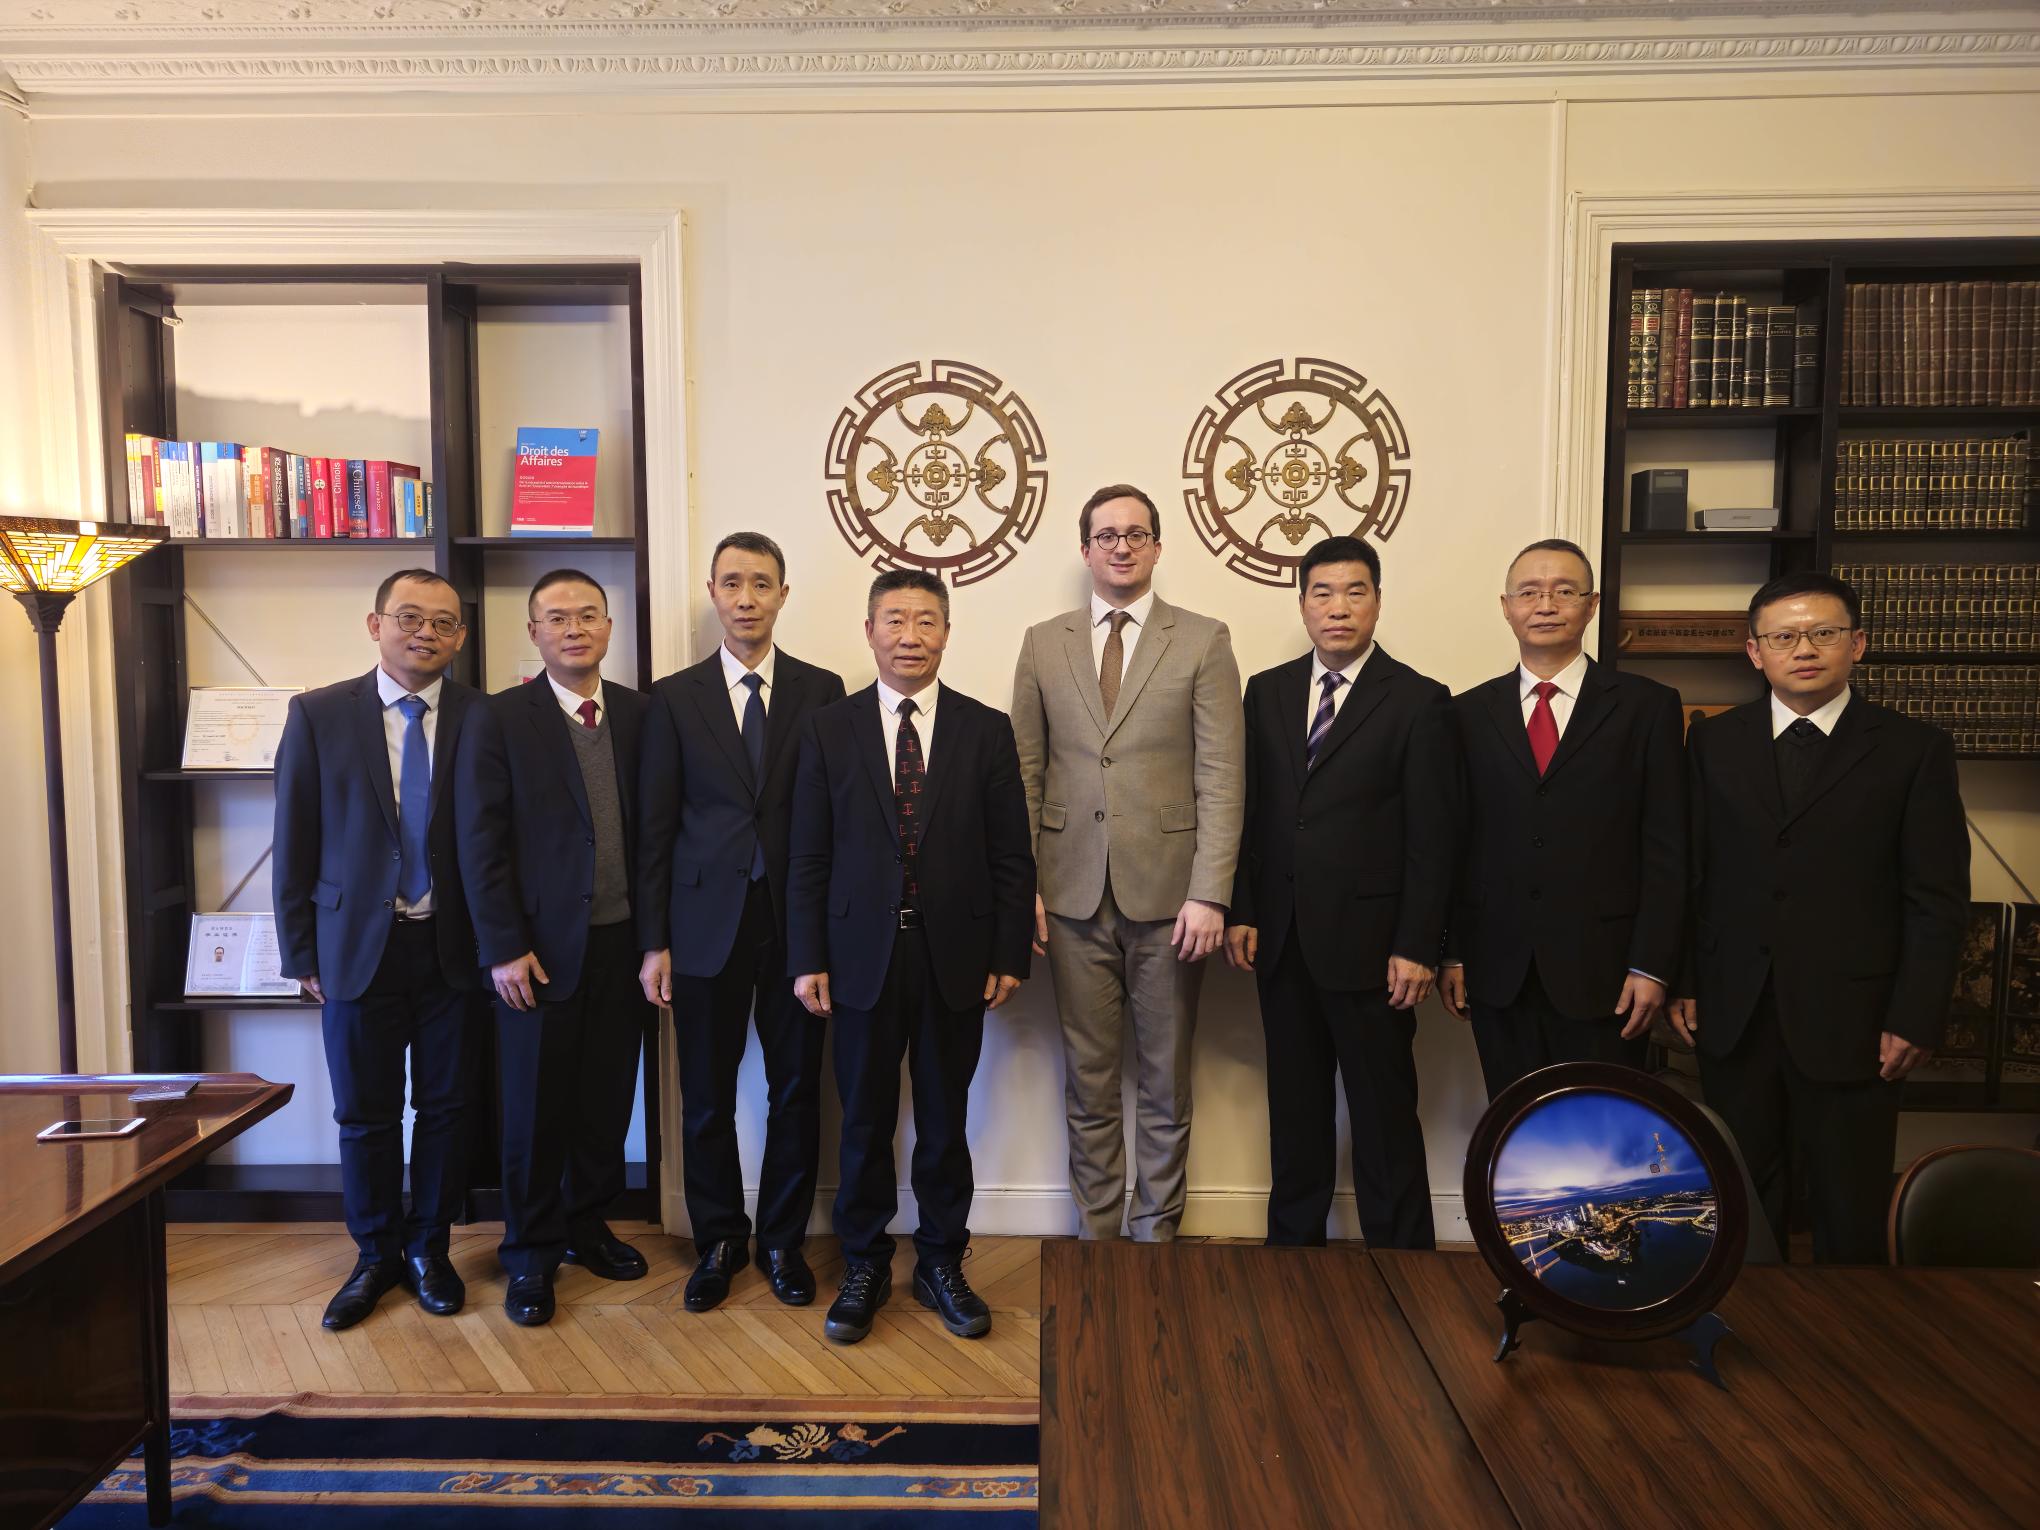 Réception par le cabinet Lacamp Avocat d'une délégation de hauts magistrats chinois